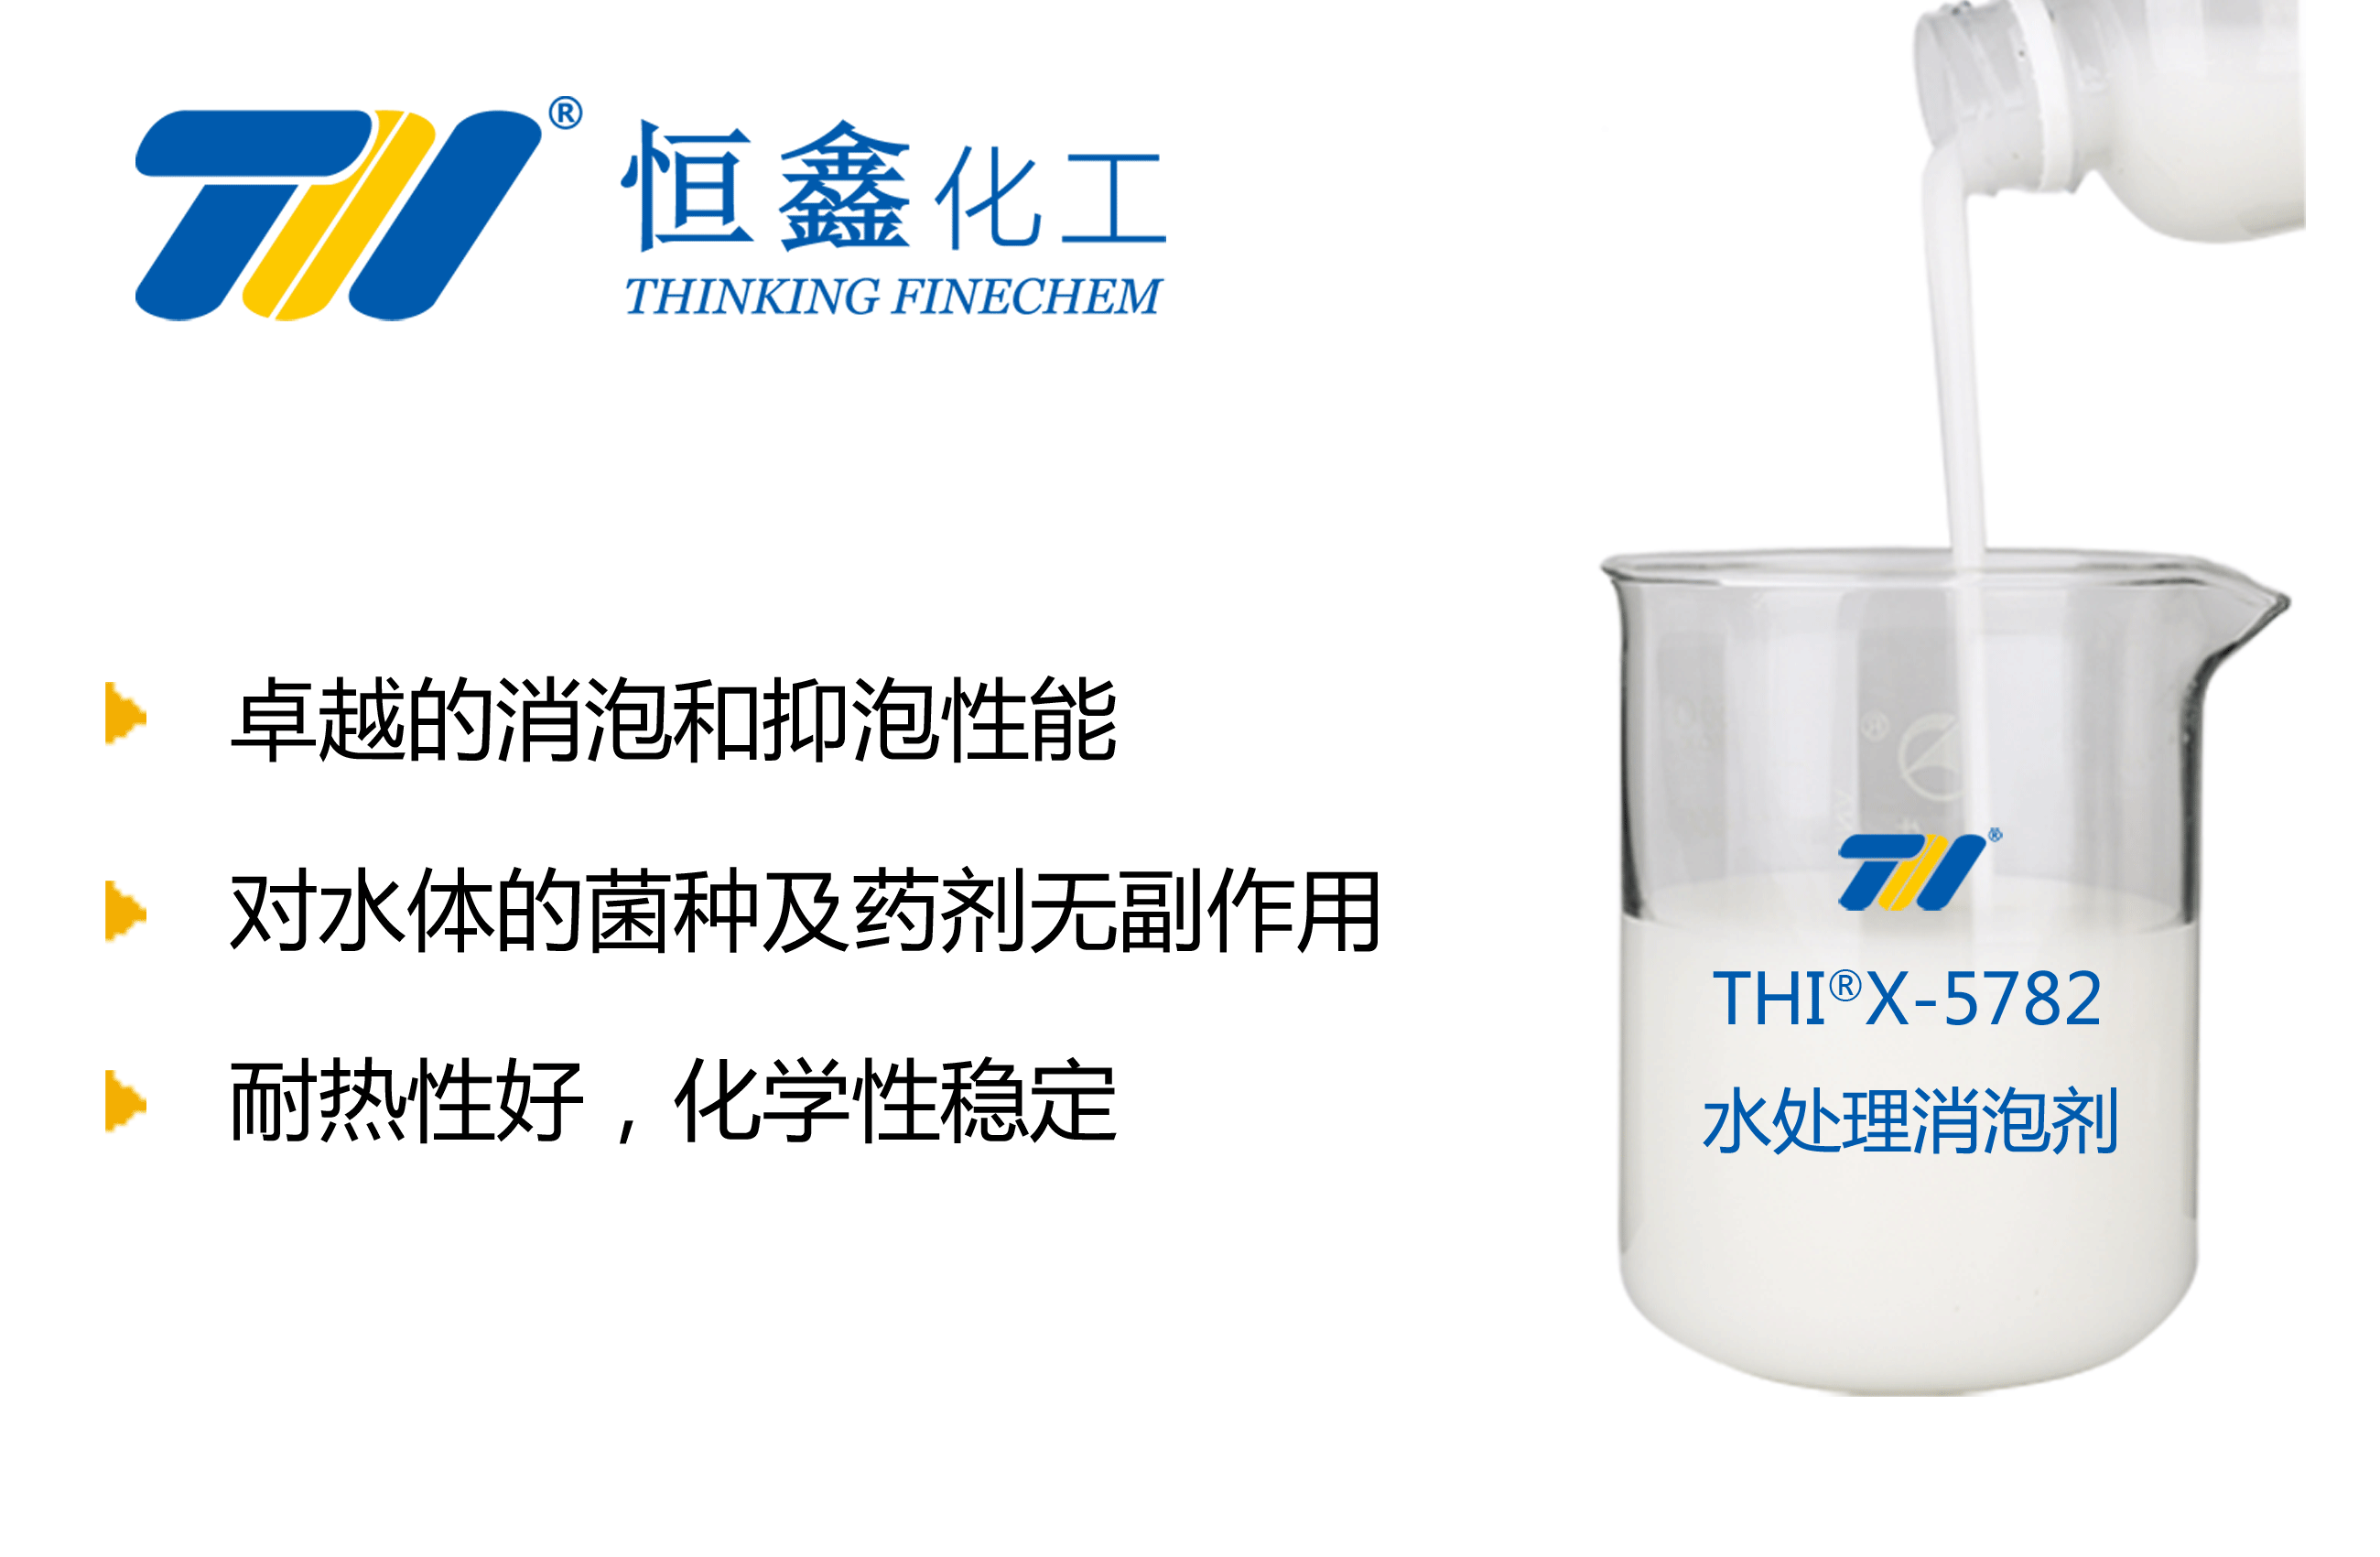 THIX-588水处理消泡剂产品图